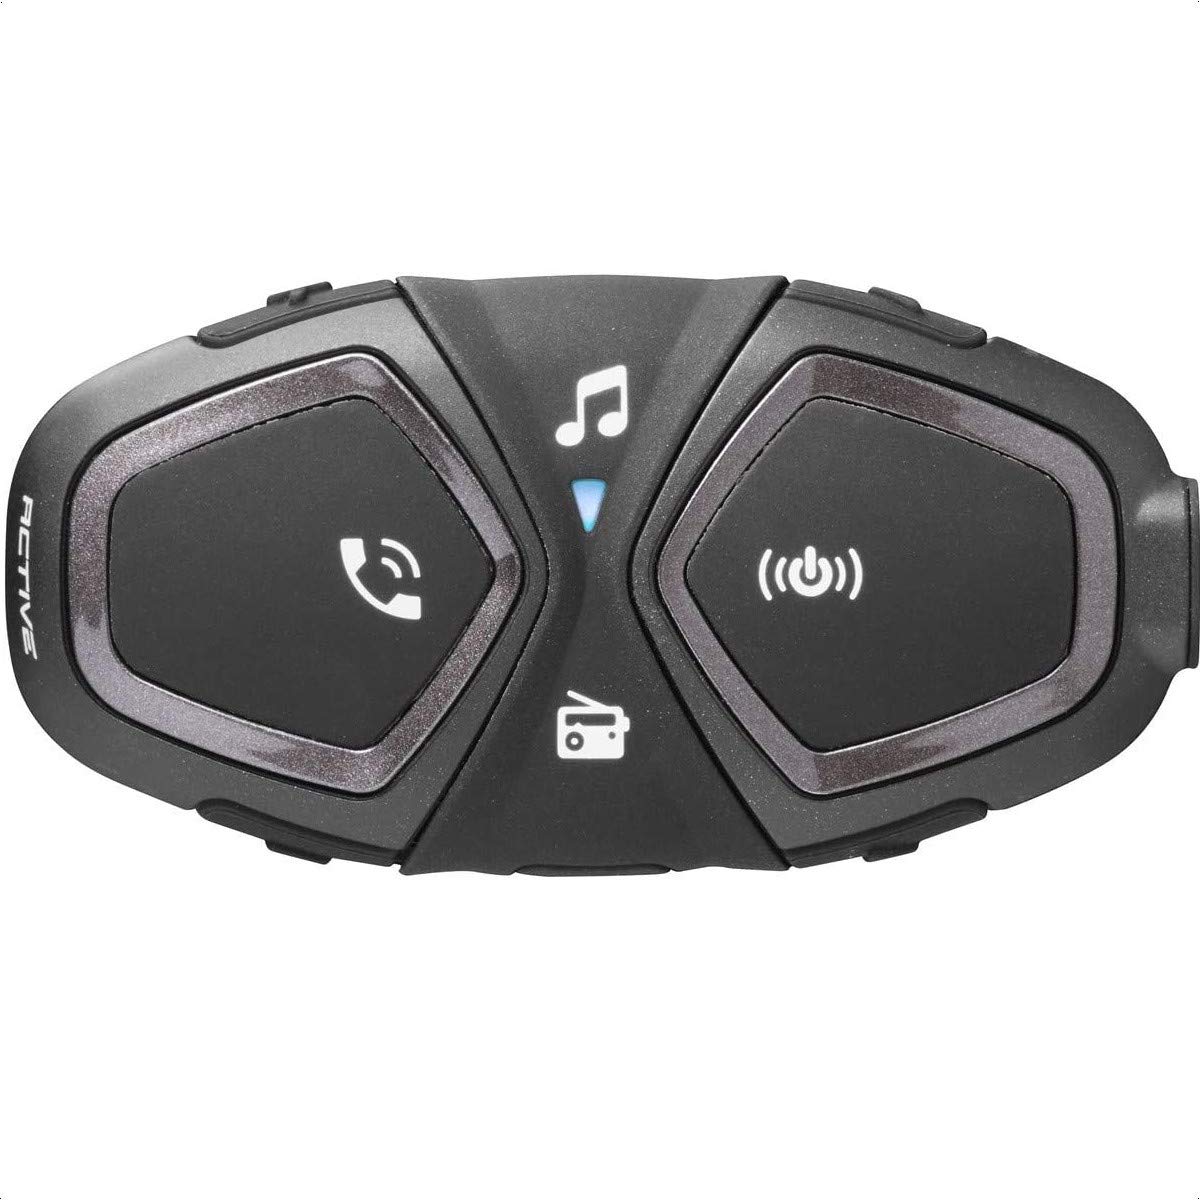 INTERPHONE Active - Einzelpack - Bluetooth-Kommunikationssystem für Motorräder - Bis zu 4 Reiters, 1Km Reichweite - 15 Std Sprechzeit - Radio Fm - GPS - MP3 - Waterproof IP67